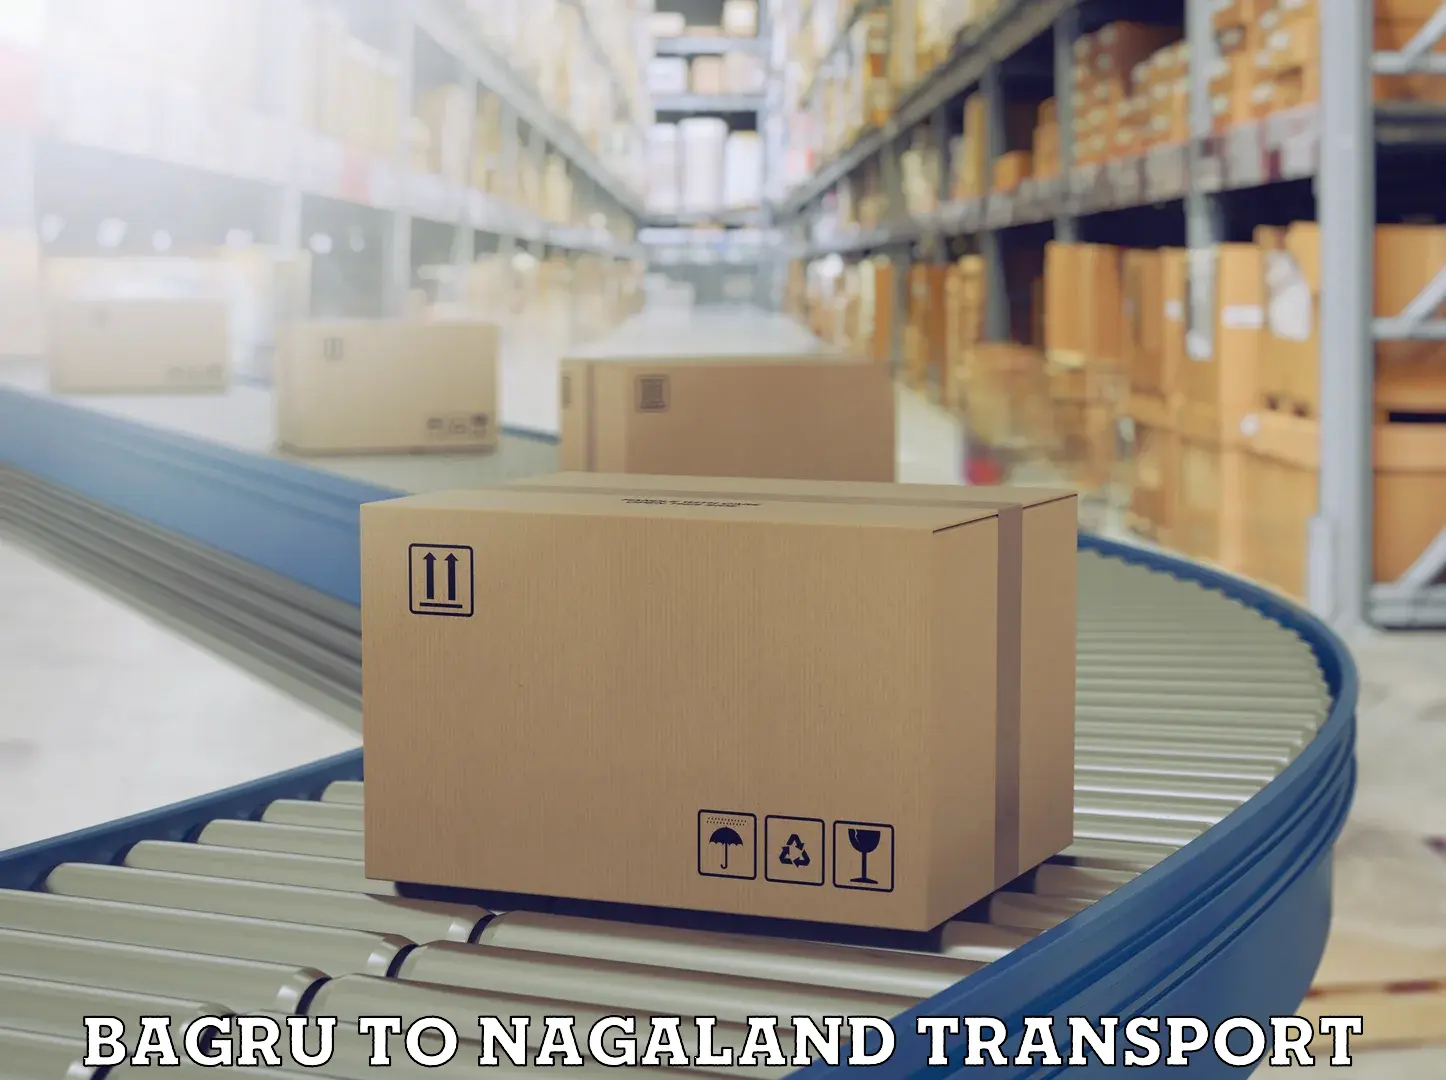 Commercial transport service Bagru to NIT Nagaland